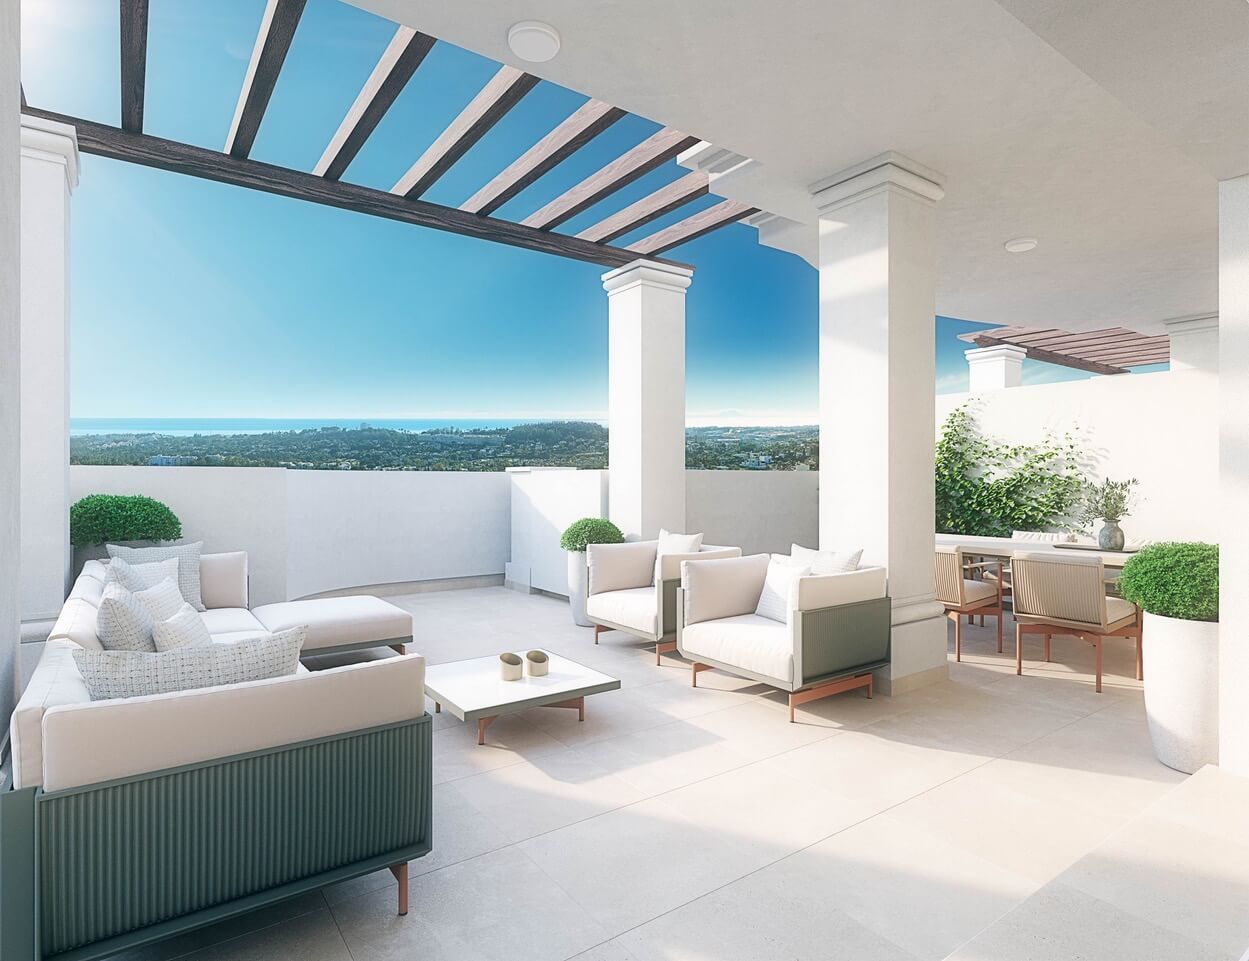 be aloha golfvallei nueva andalucia vamoz marbella appartement penthouse kopen spanje costa del sol gerenoveerd zeezicht